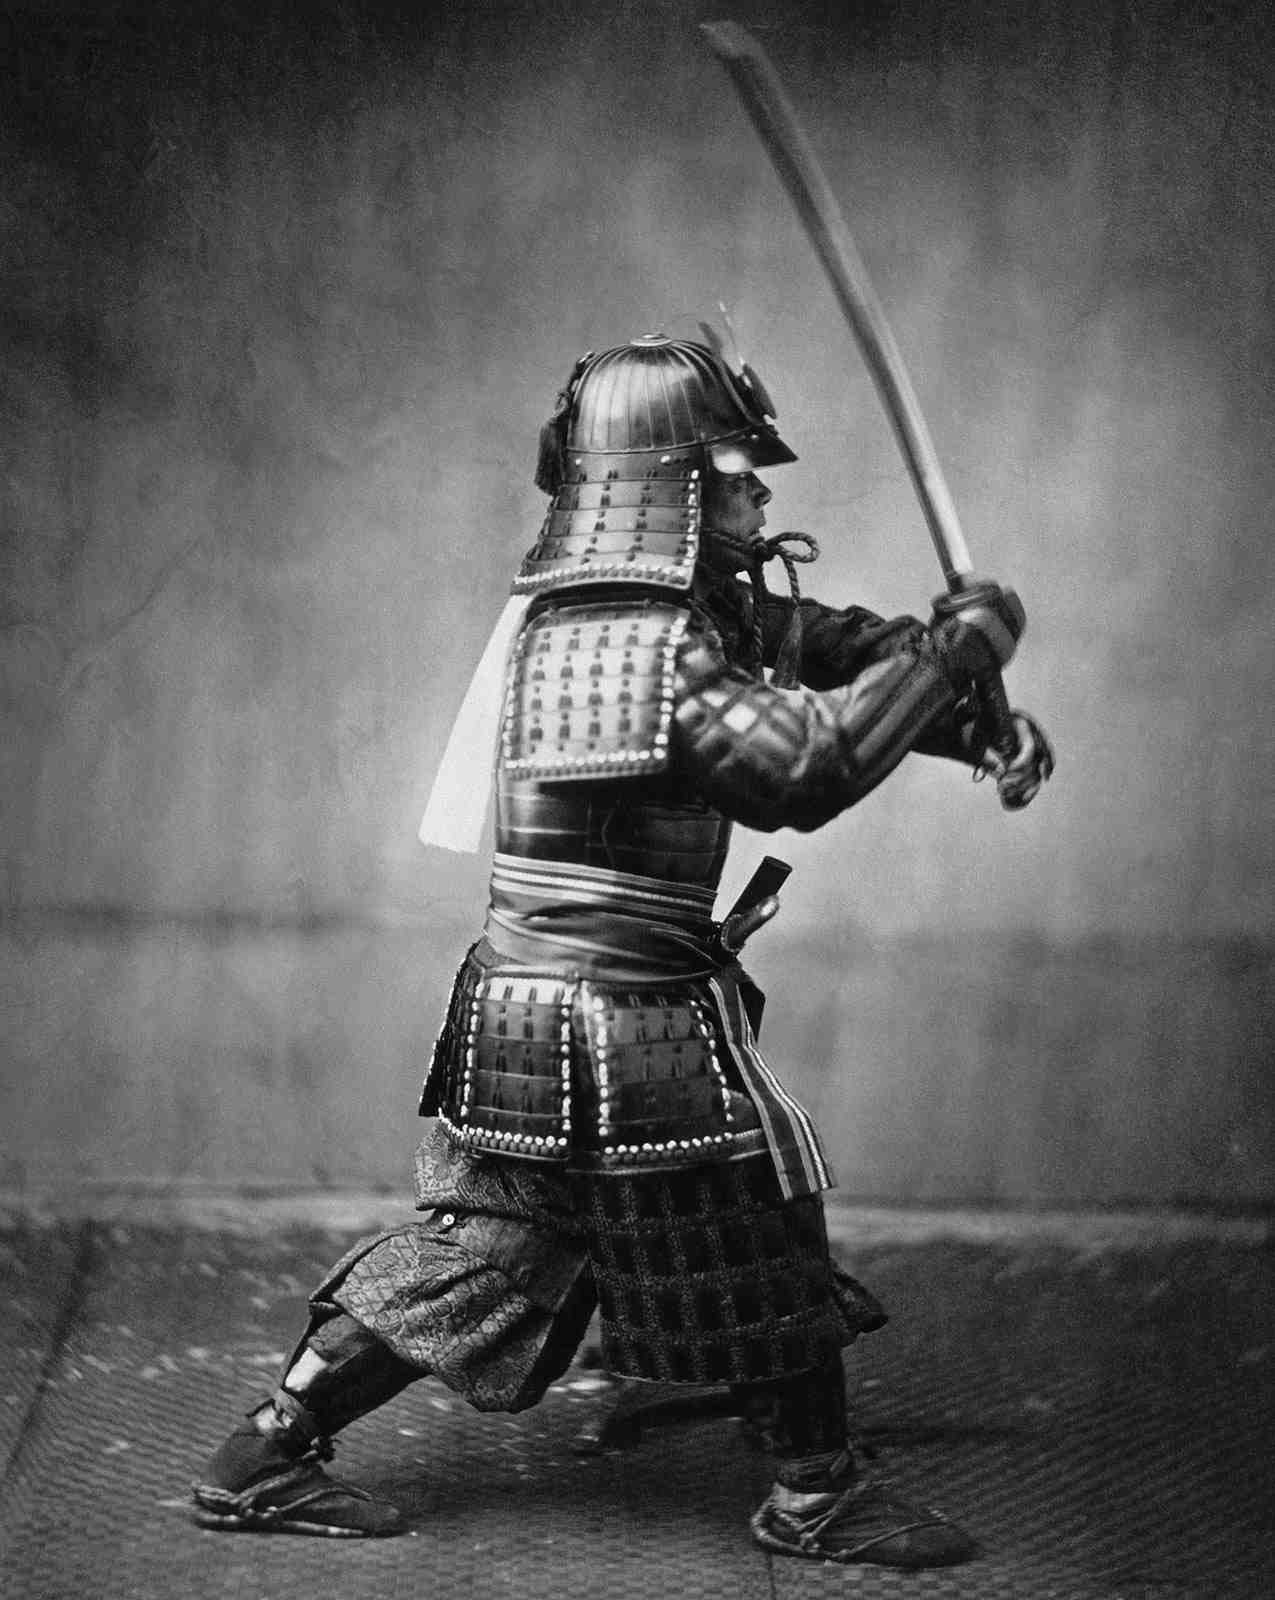 http://bakadesuyo.com/wp-content/uploads/2014/02/Samurai.jpg